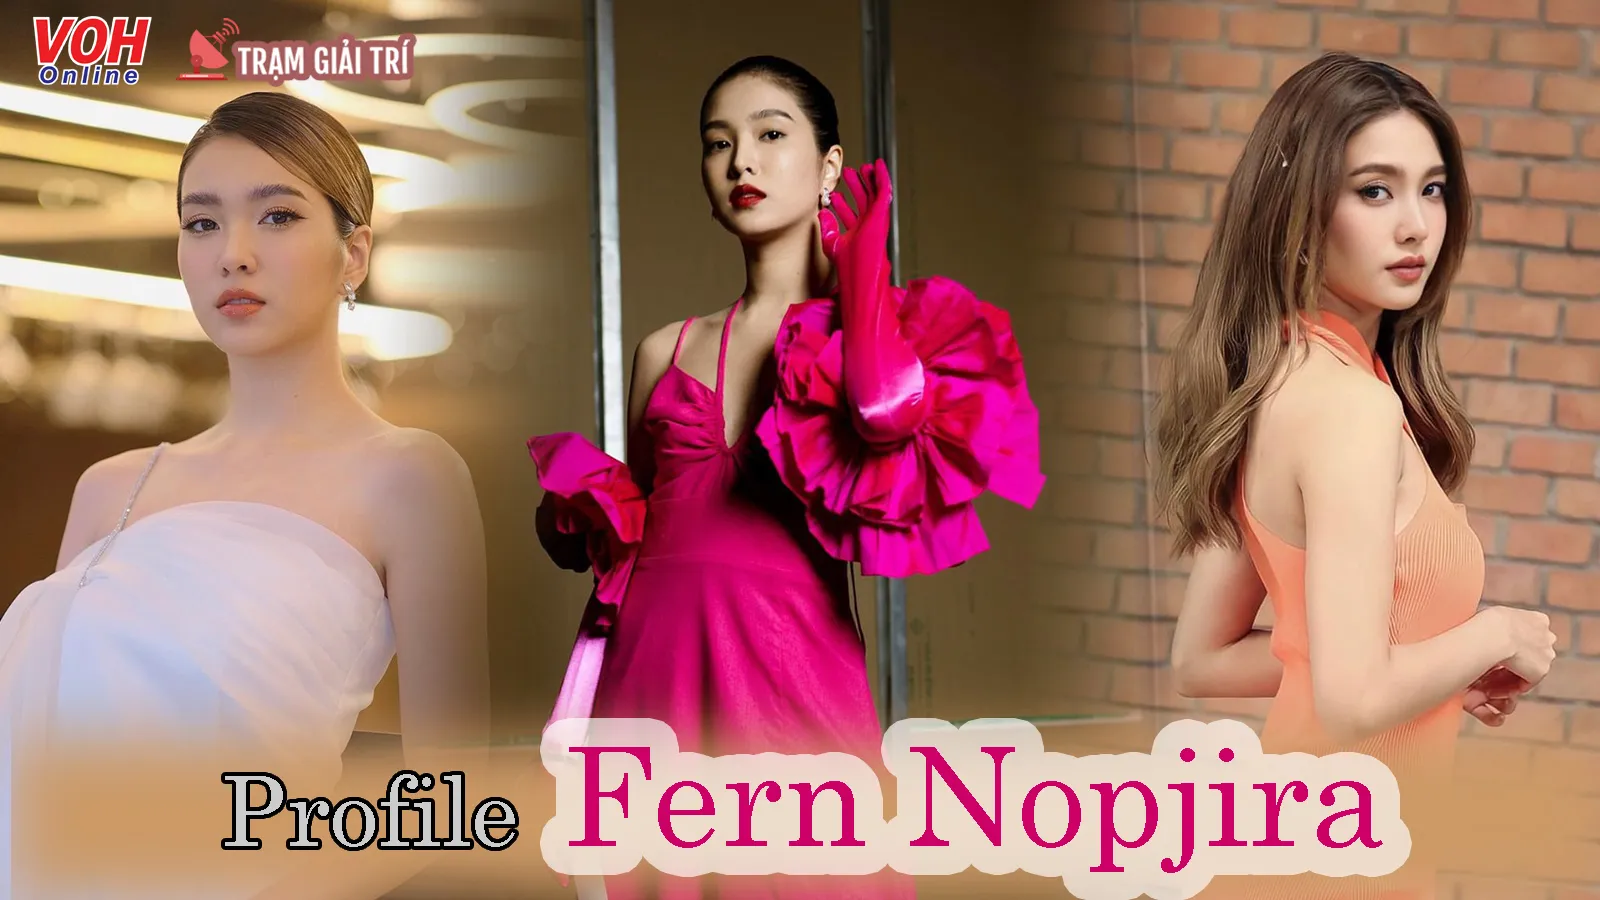 Tiểu sử Fern Nopjira - Ngôi sao xinh đẹp của làng điện ảnh Thái Lan